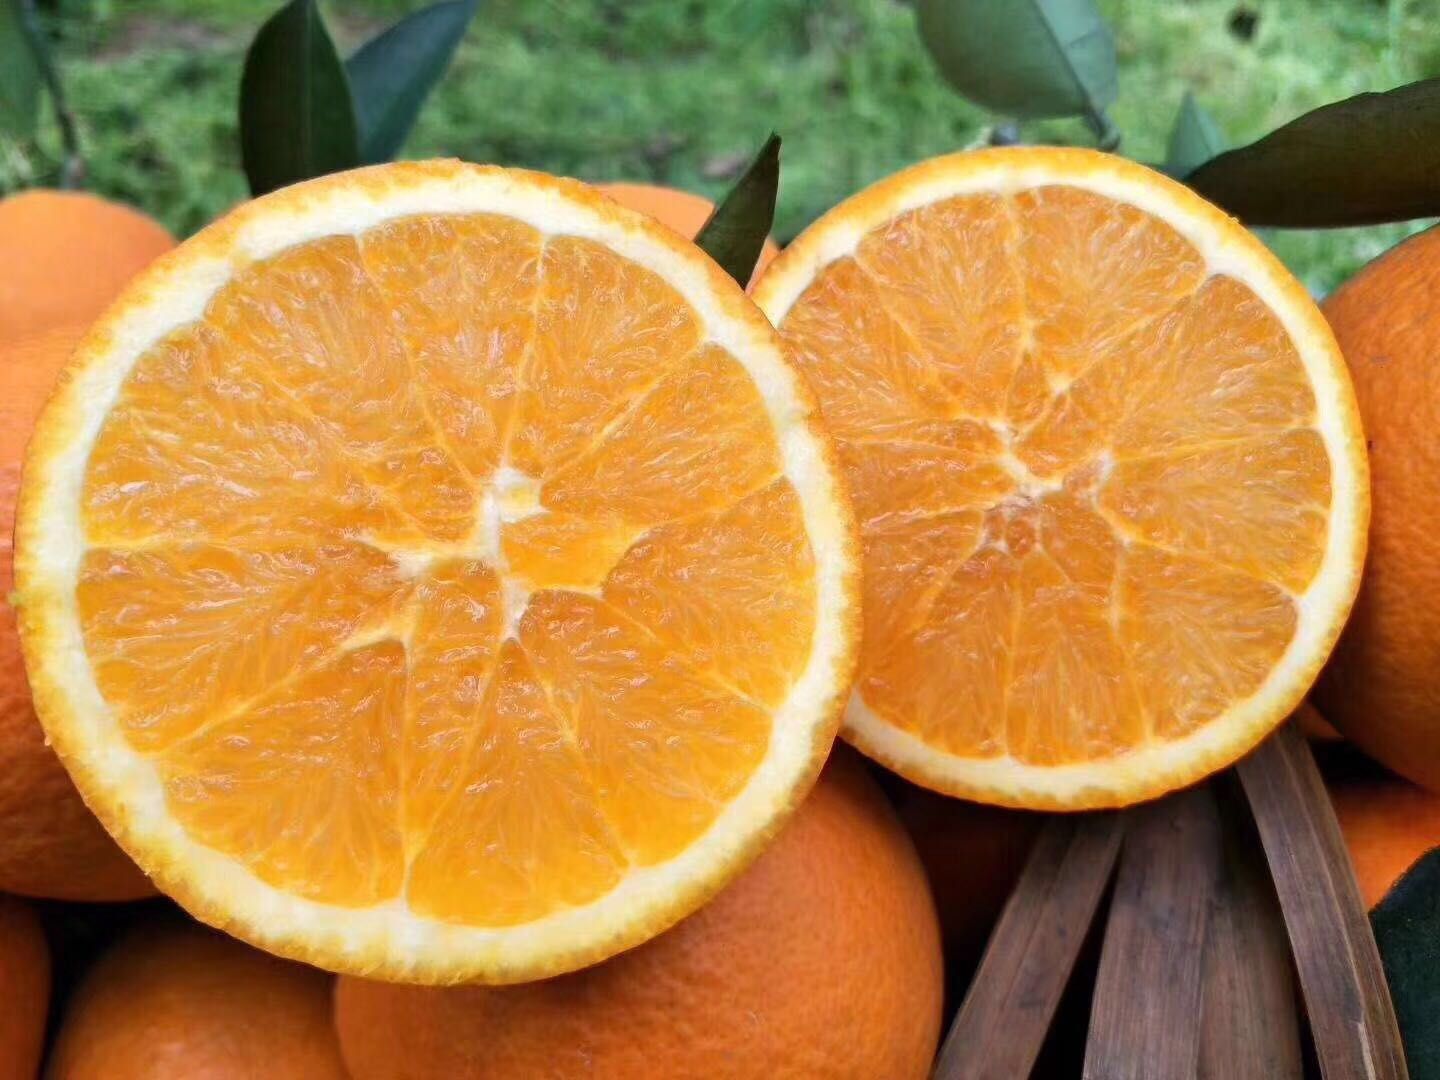 伦晚脐橙 秭归脐橙春橙甜橙爆汁帝王橙新鲜